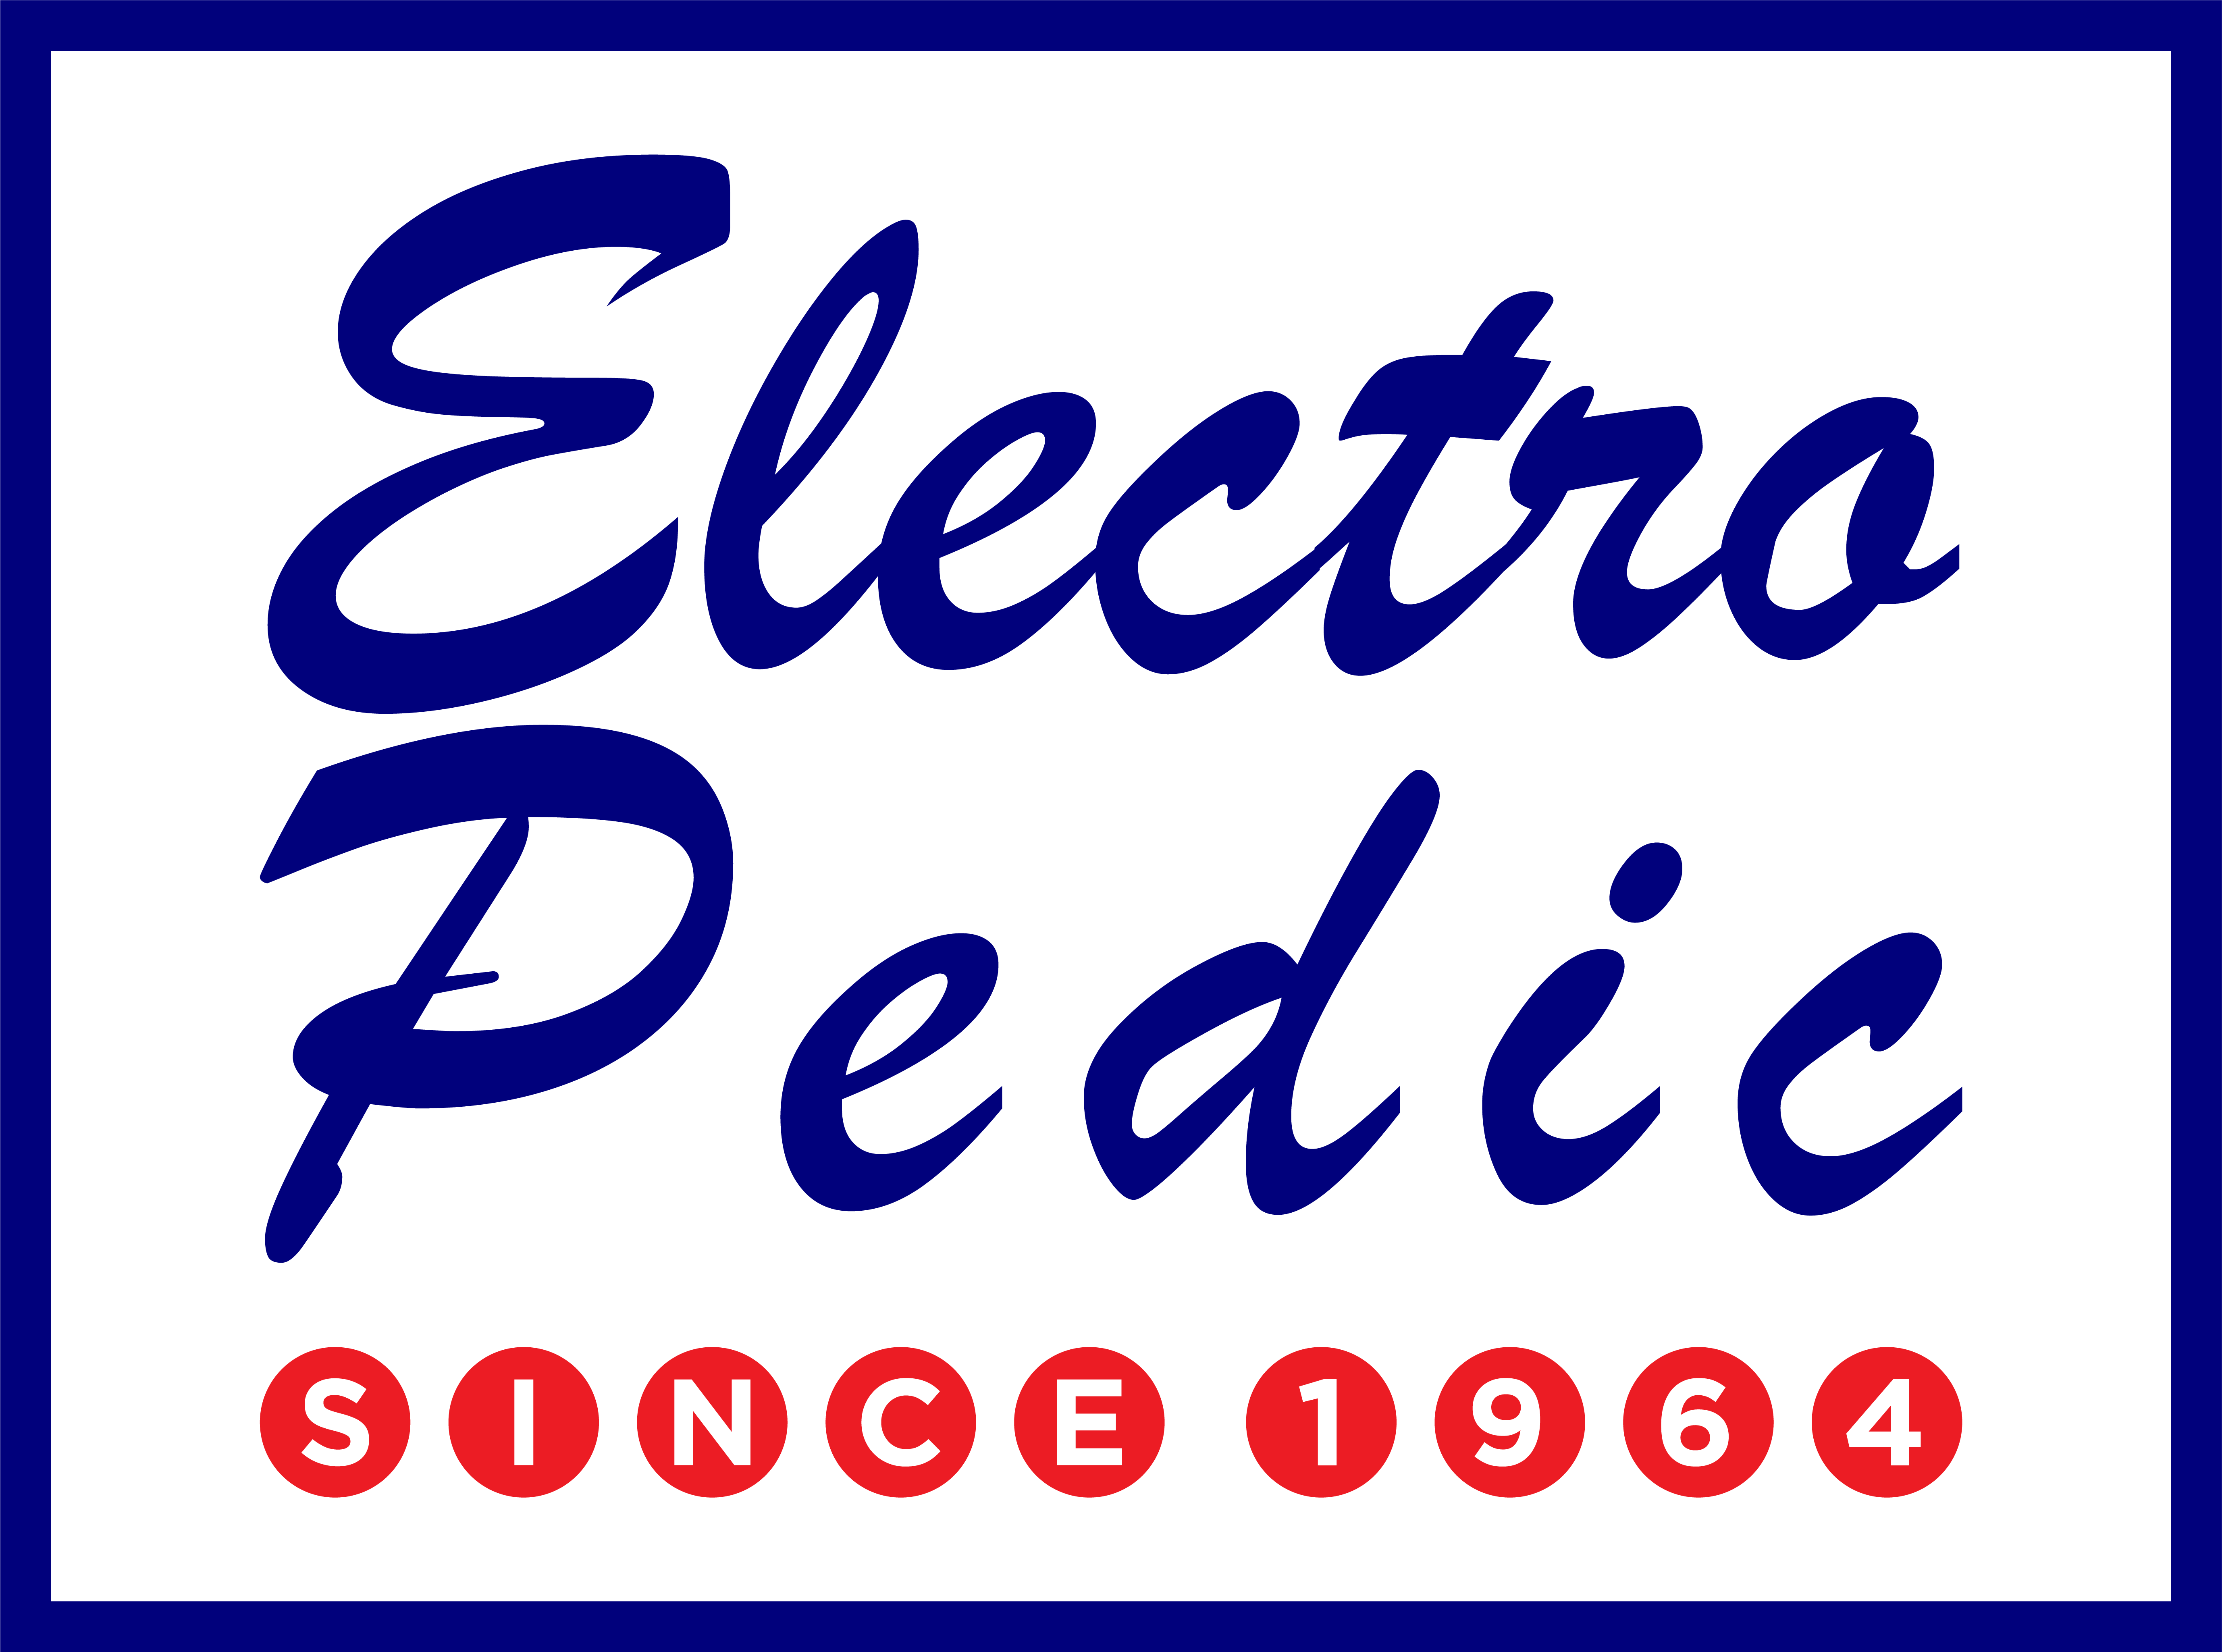 Phoenix electropedic store dealer showroom